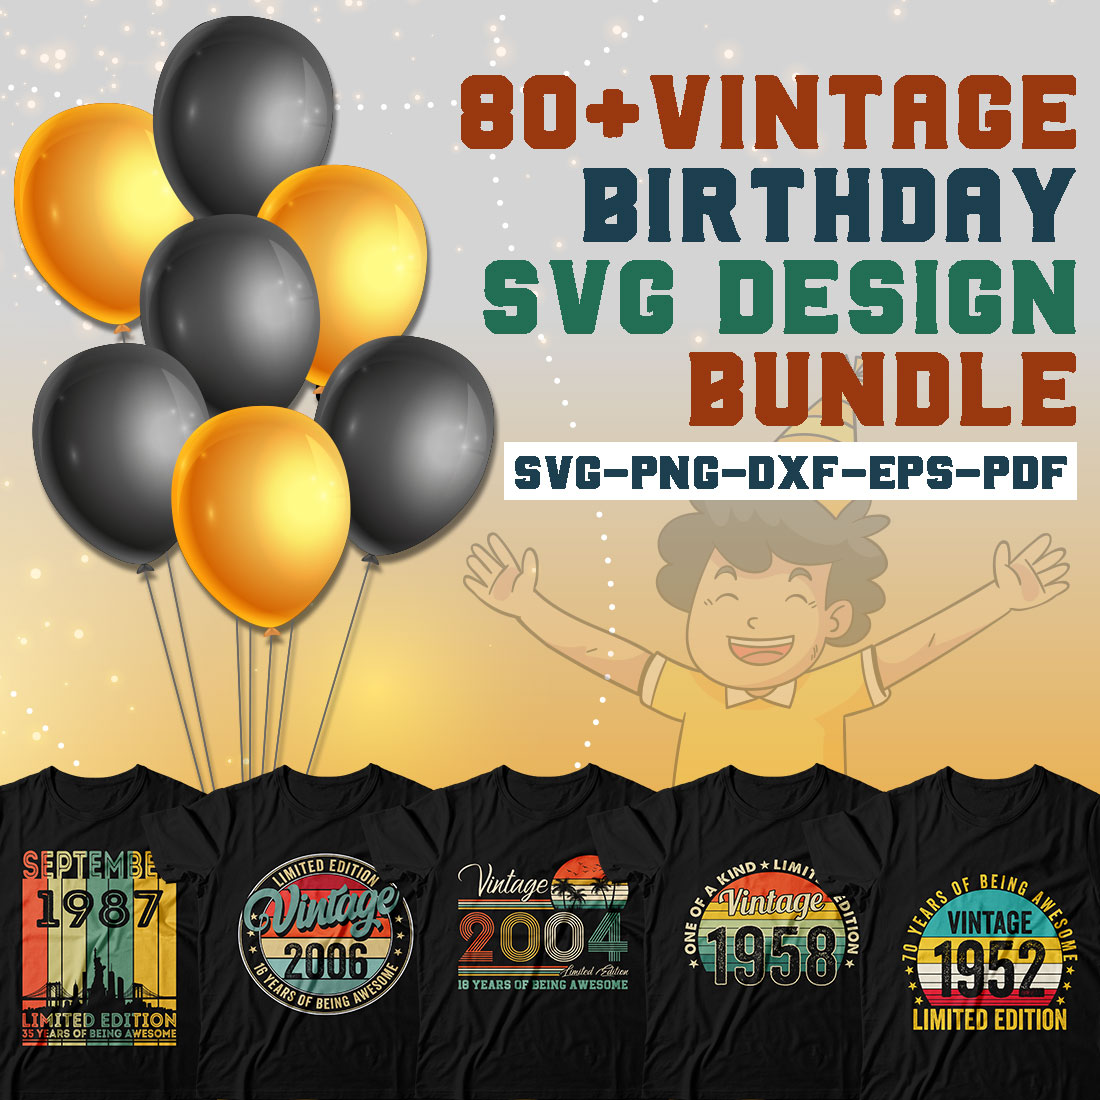 Vintage Birthday Svg Design Bundle cover image.